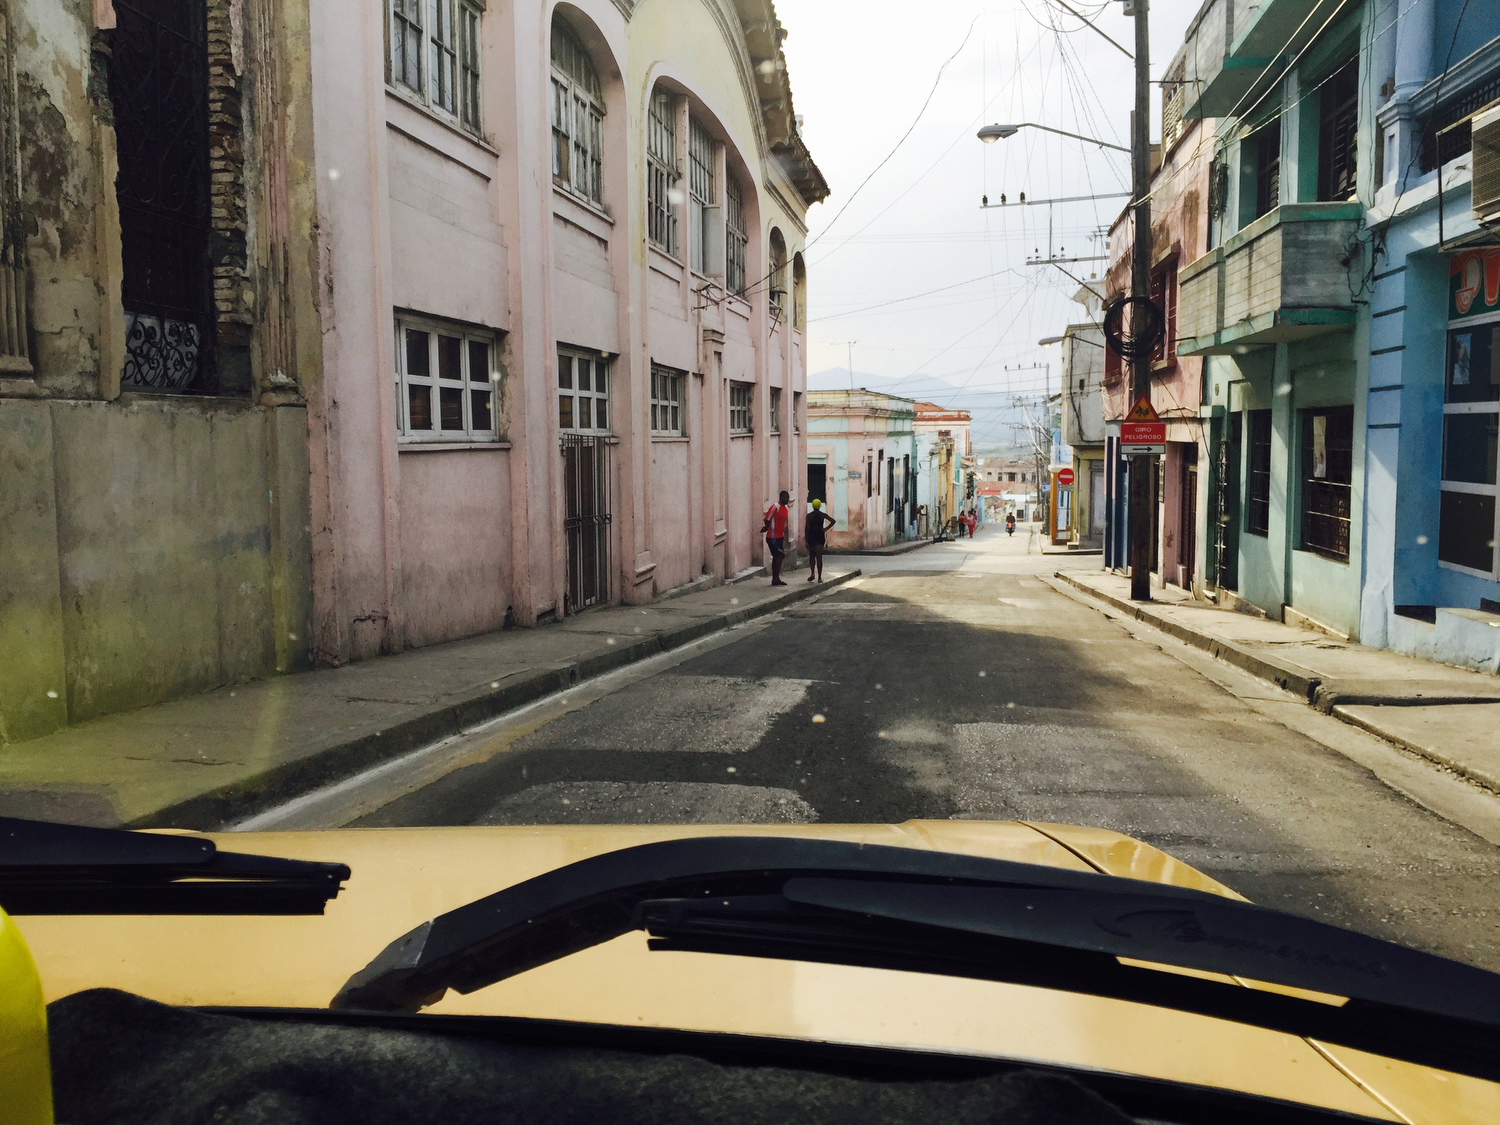  Street scene in Santiago de Cuba, Cuba. 